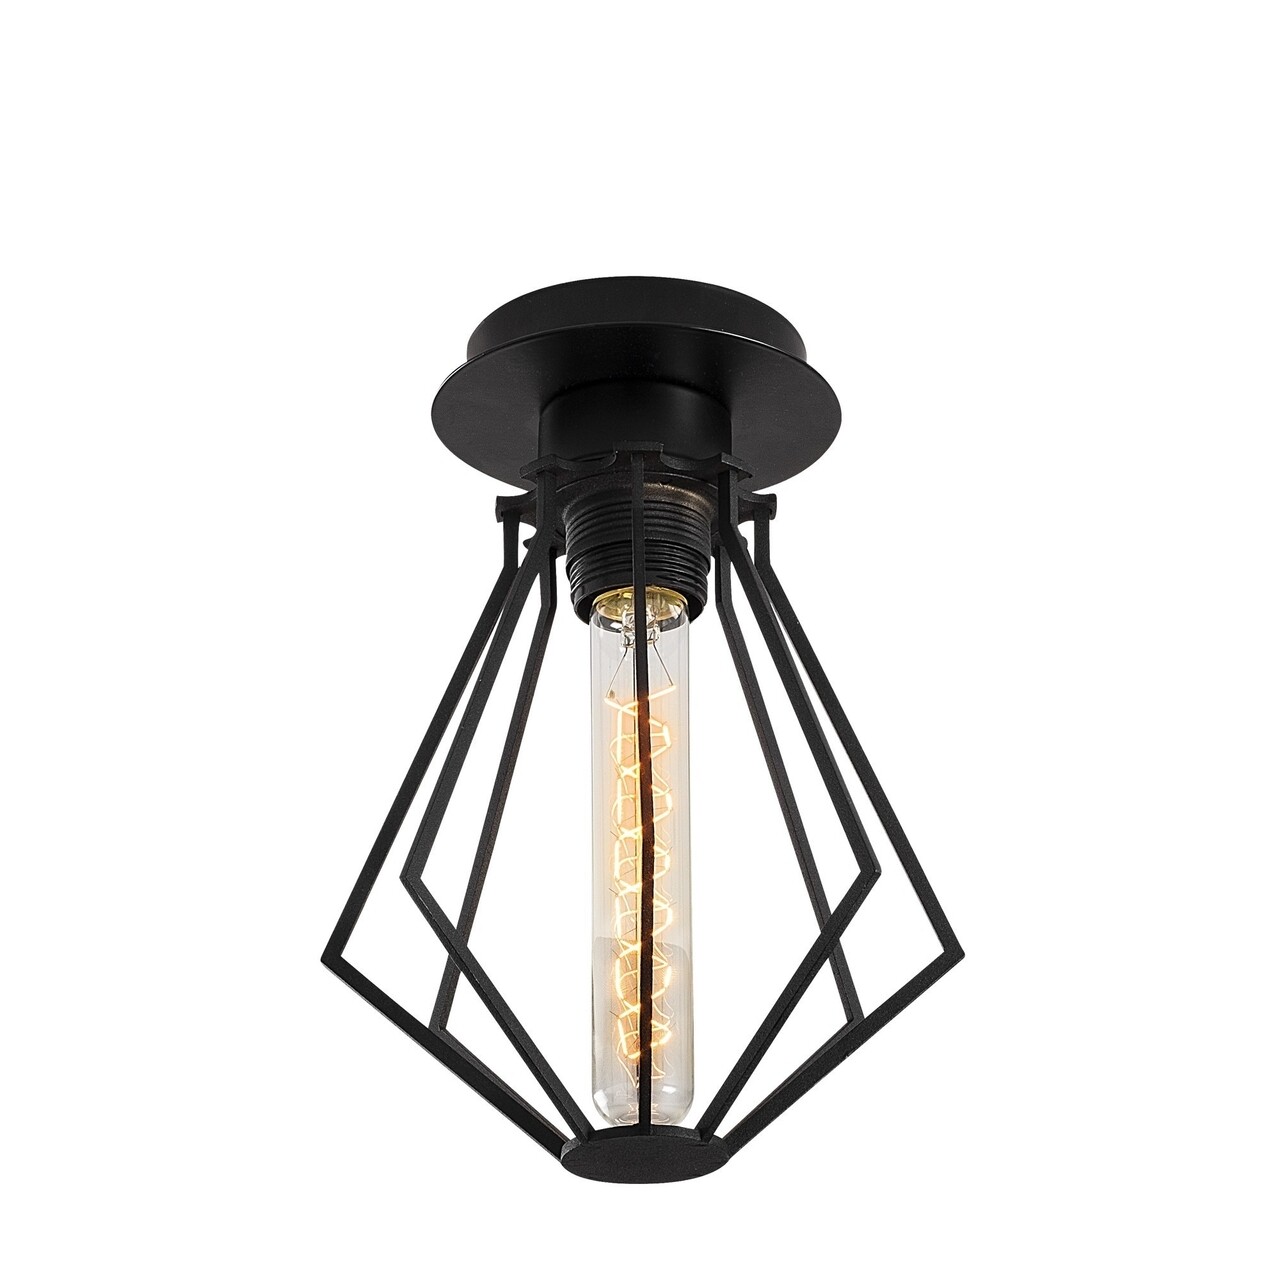 Oylat N-1039 Mennyezeti lámpa, Noor, 18 x 25 cm, 1 x E27, 100W, fekete